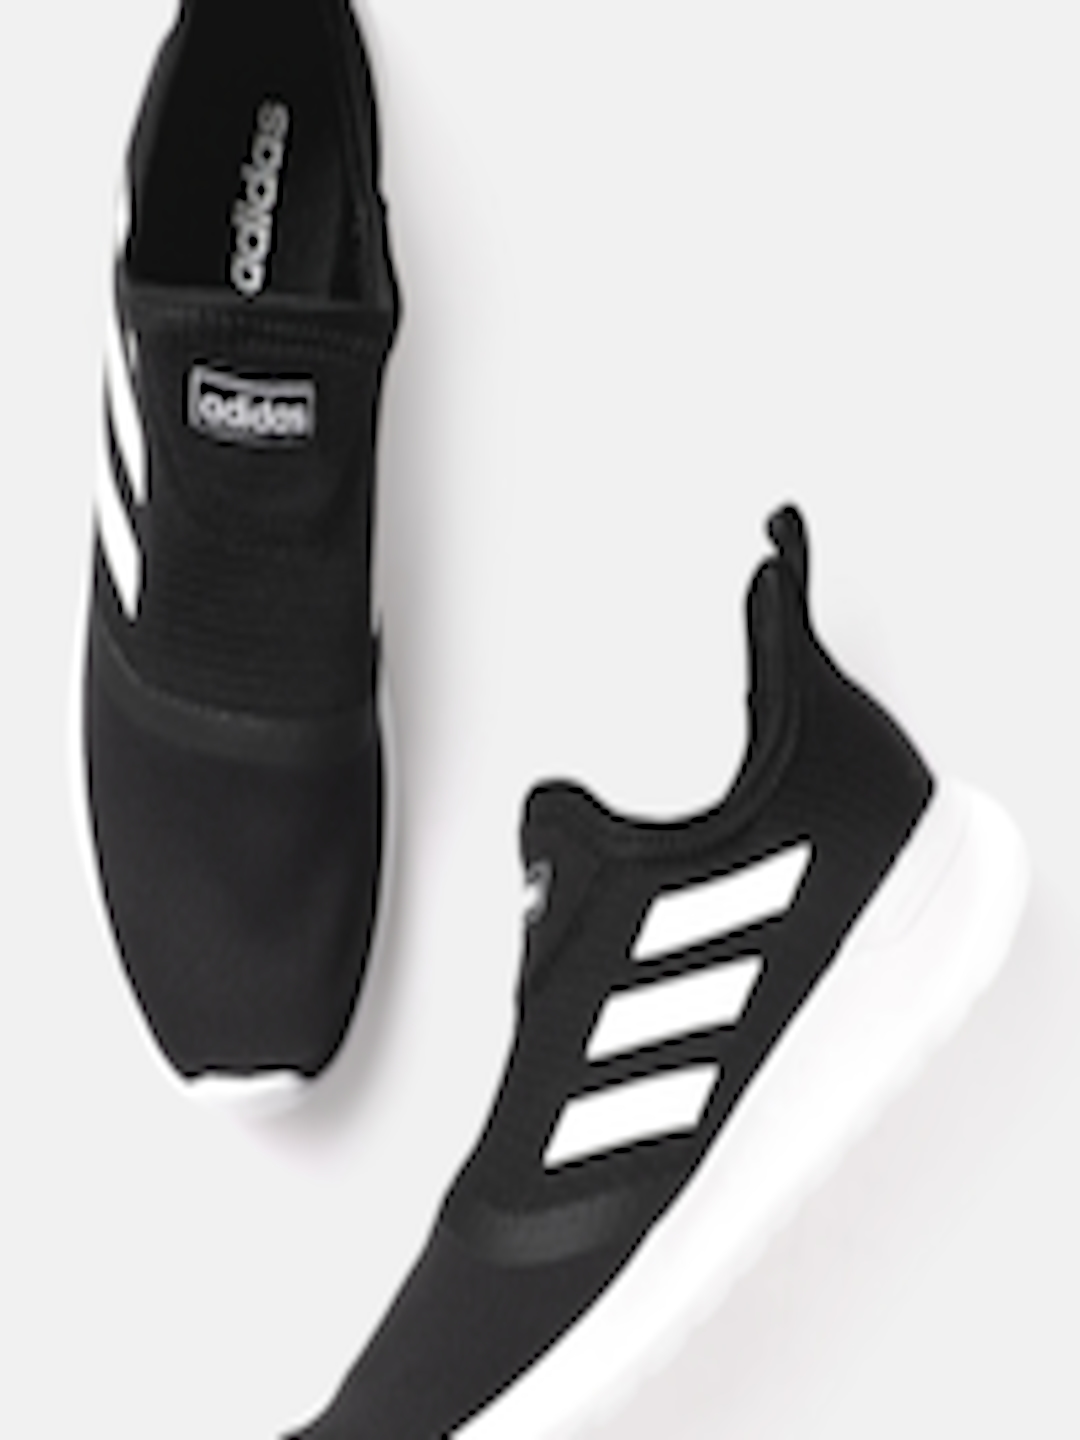 Buy ADIDAS Men Black & White Woven Design Lite Racer Slip On Sneakers ...